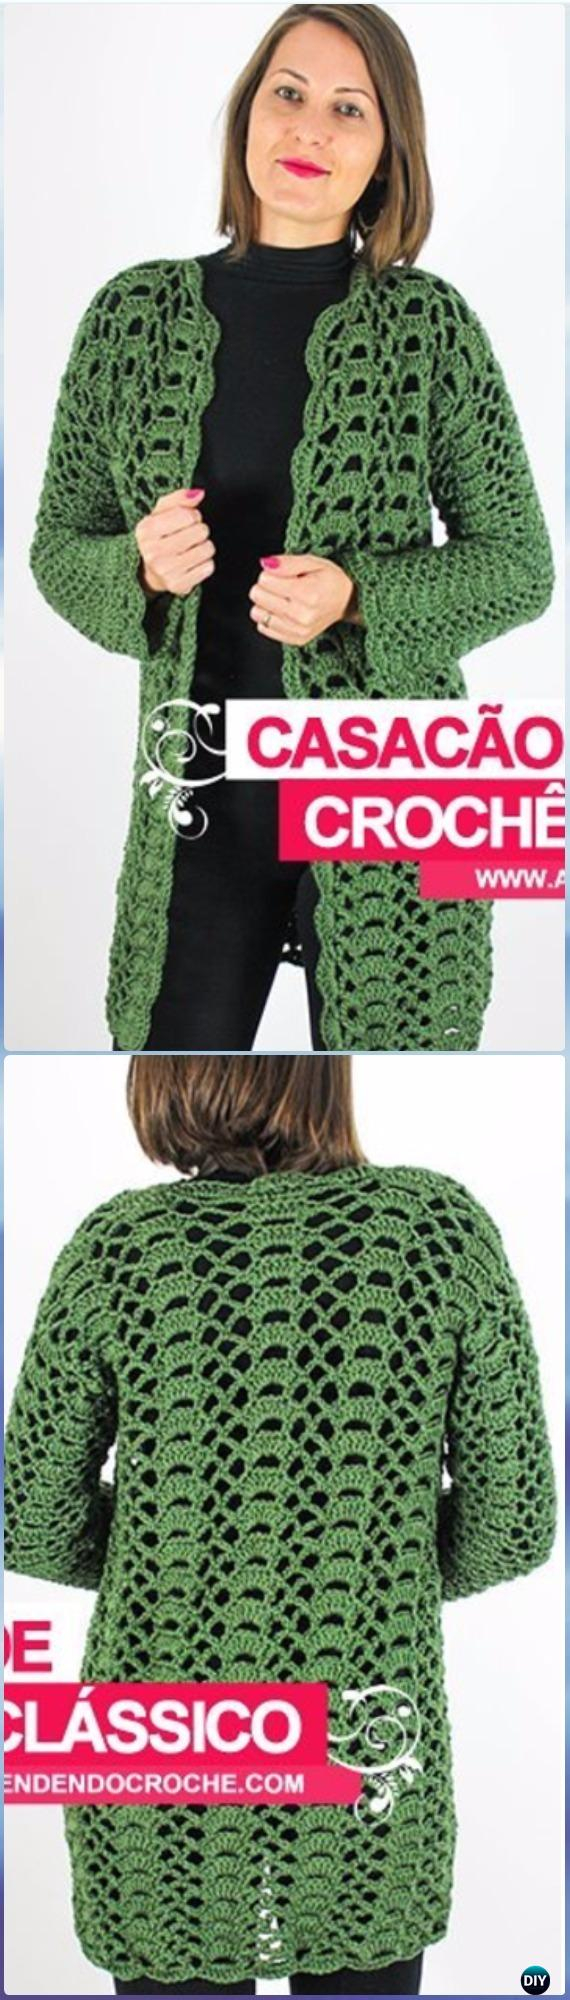 Free Crochet Patterns Womens Sweaters Crochet Women Sweater Coat Cardigan Free Patterns